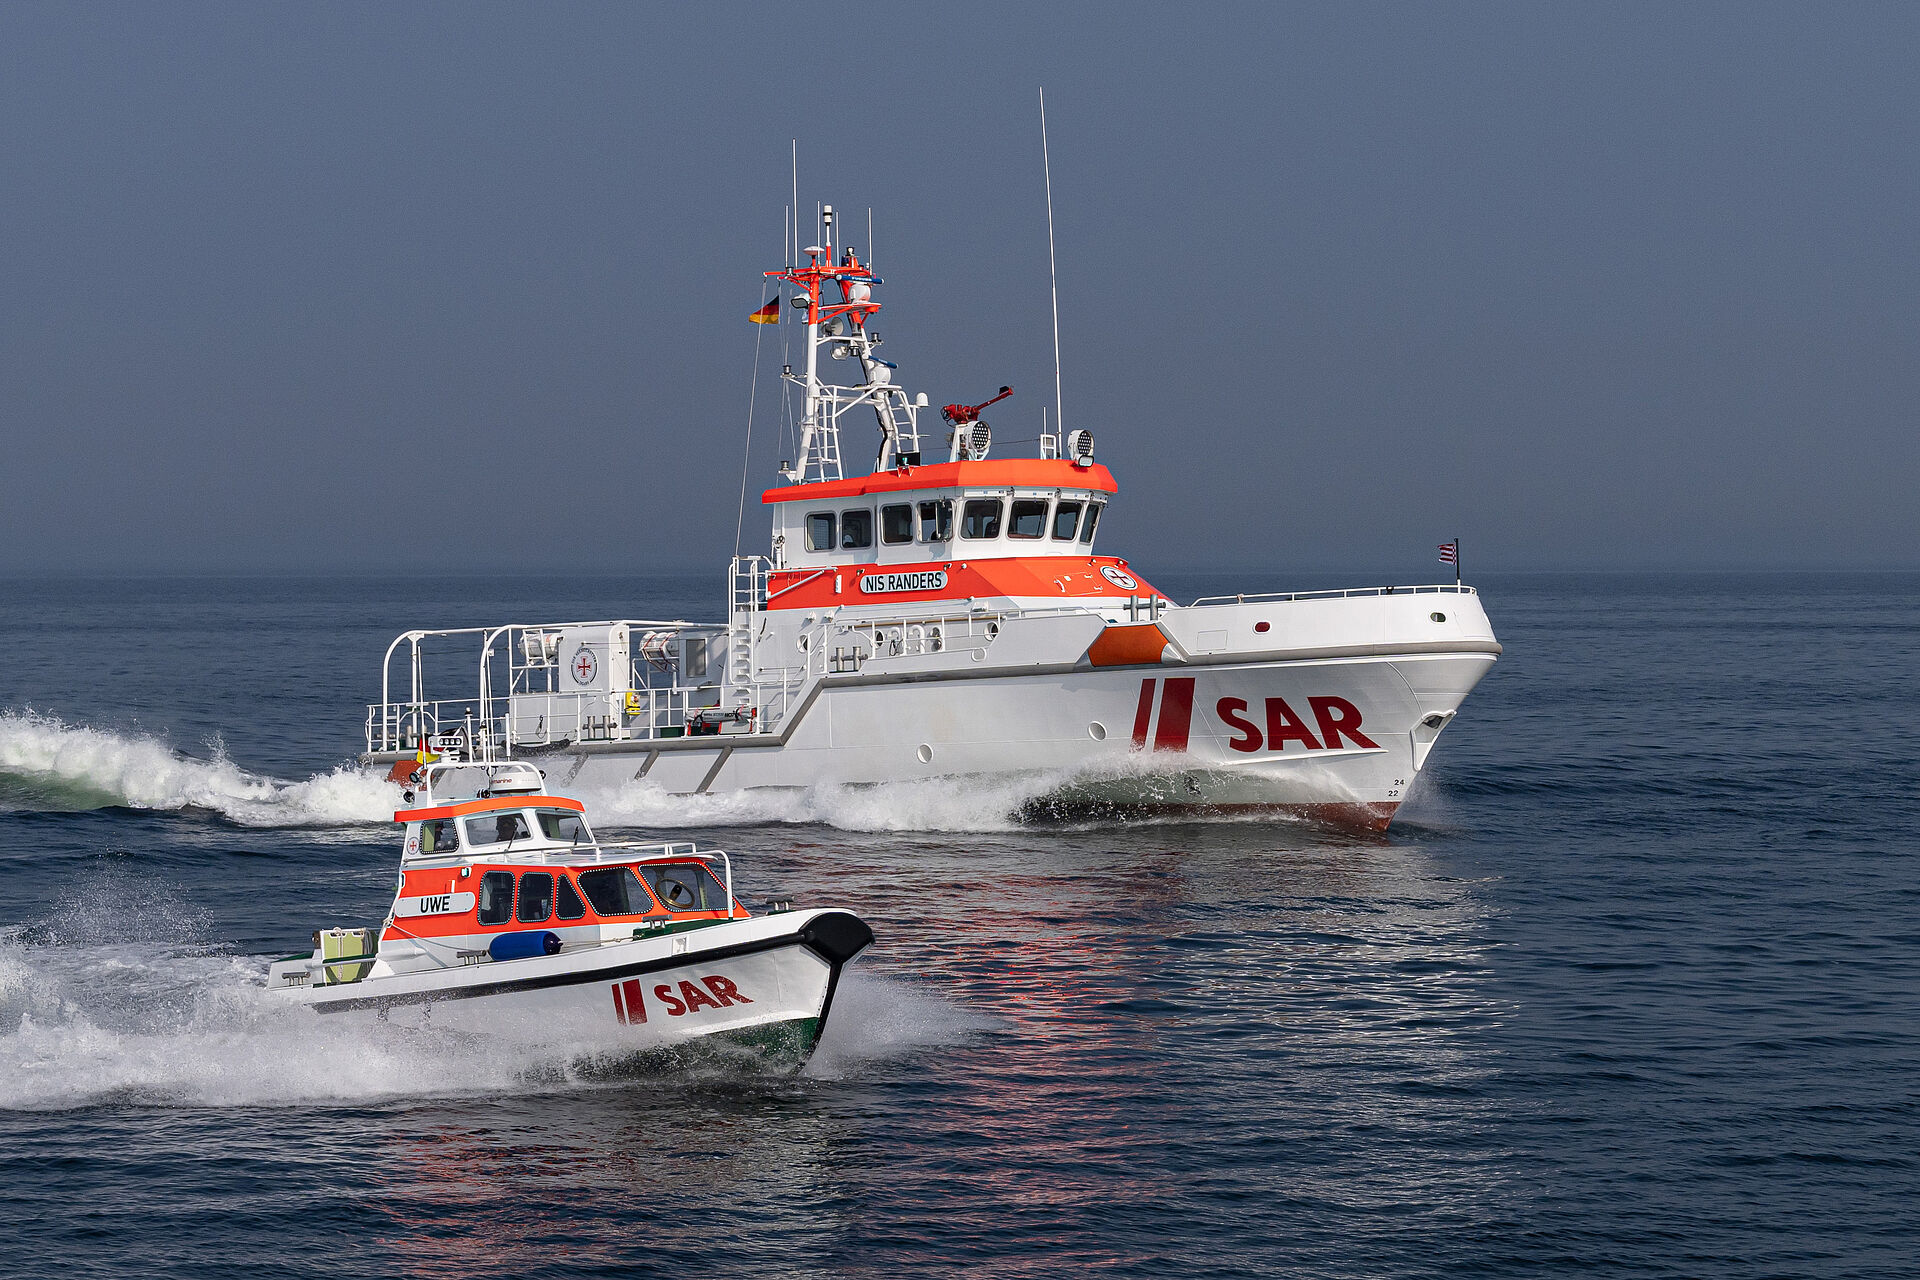 Ein Seenotrettungskreuzer und sein Tochterboot fahren parallel mit hoher Geschwindigkeit über das Meer.